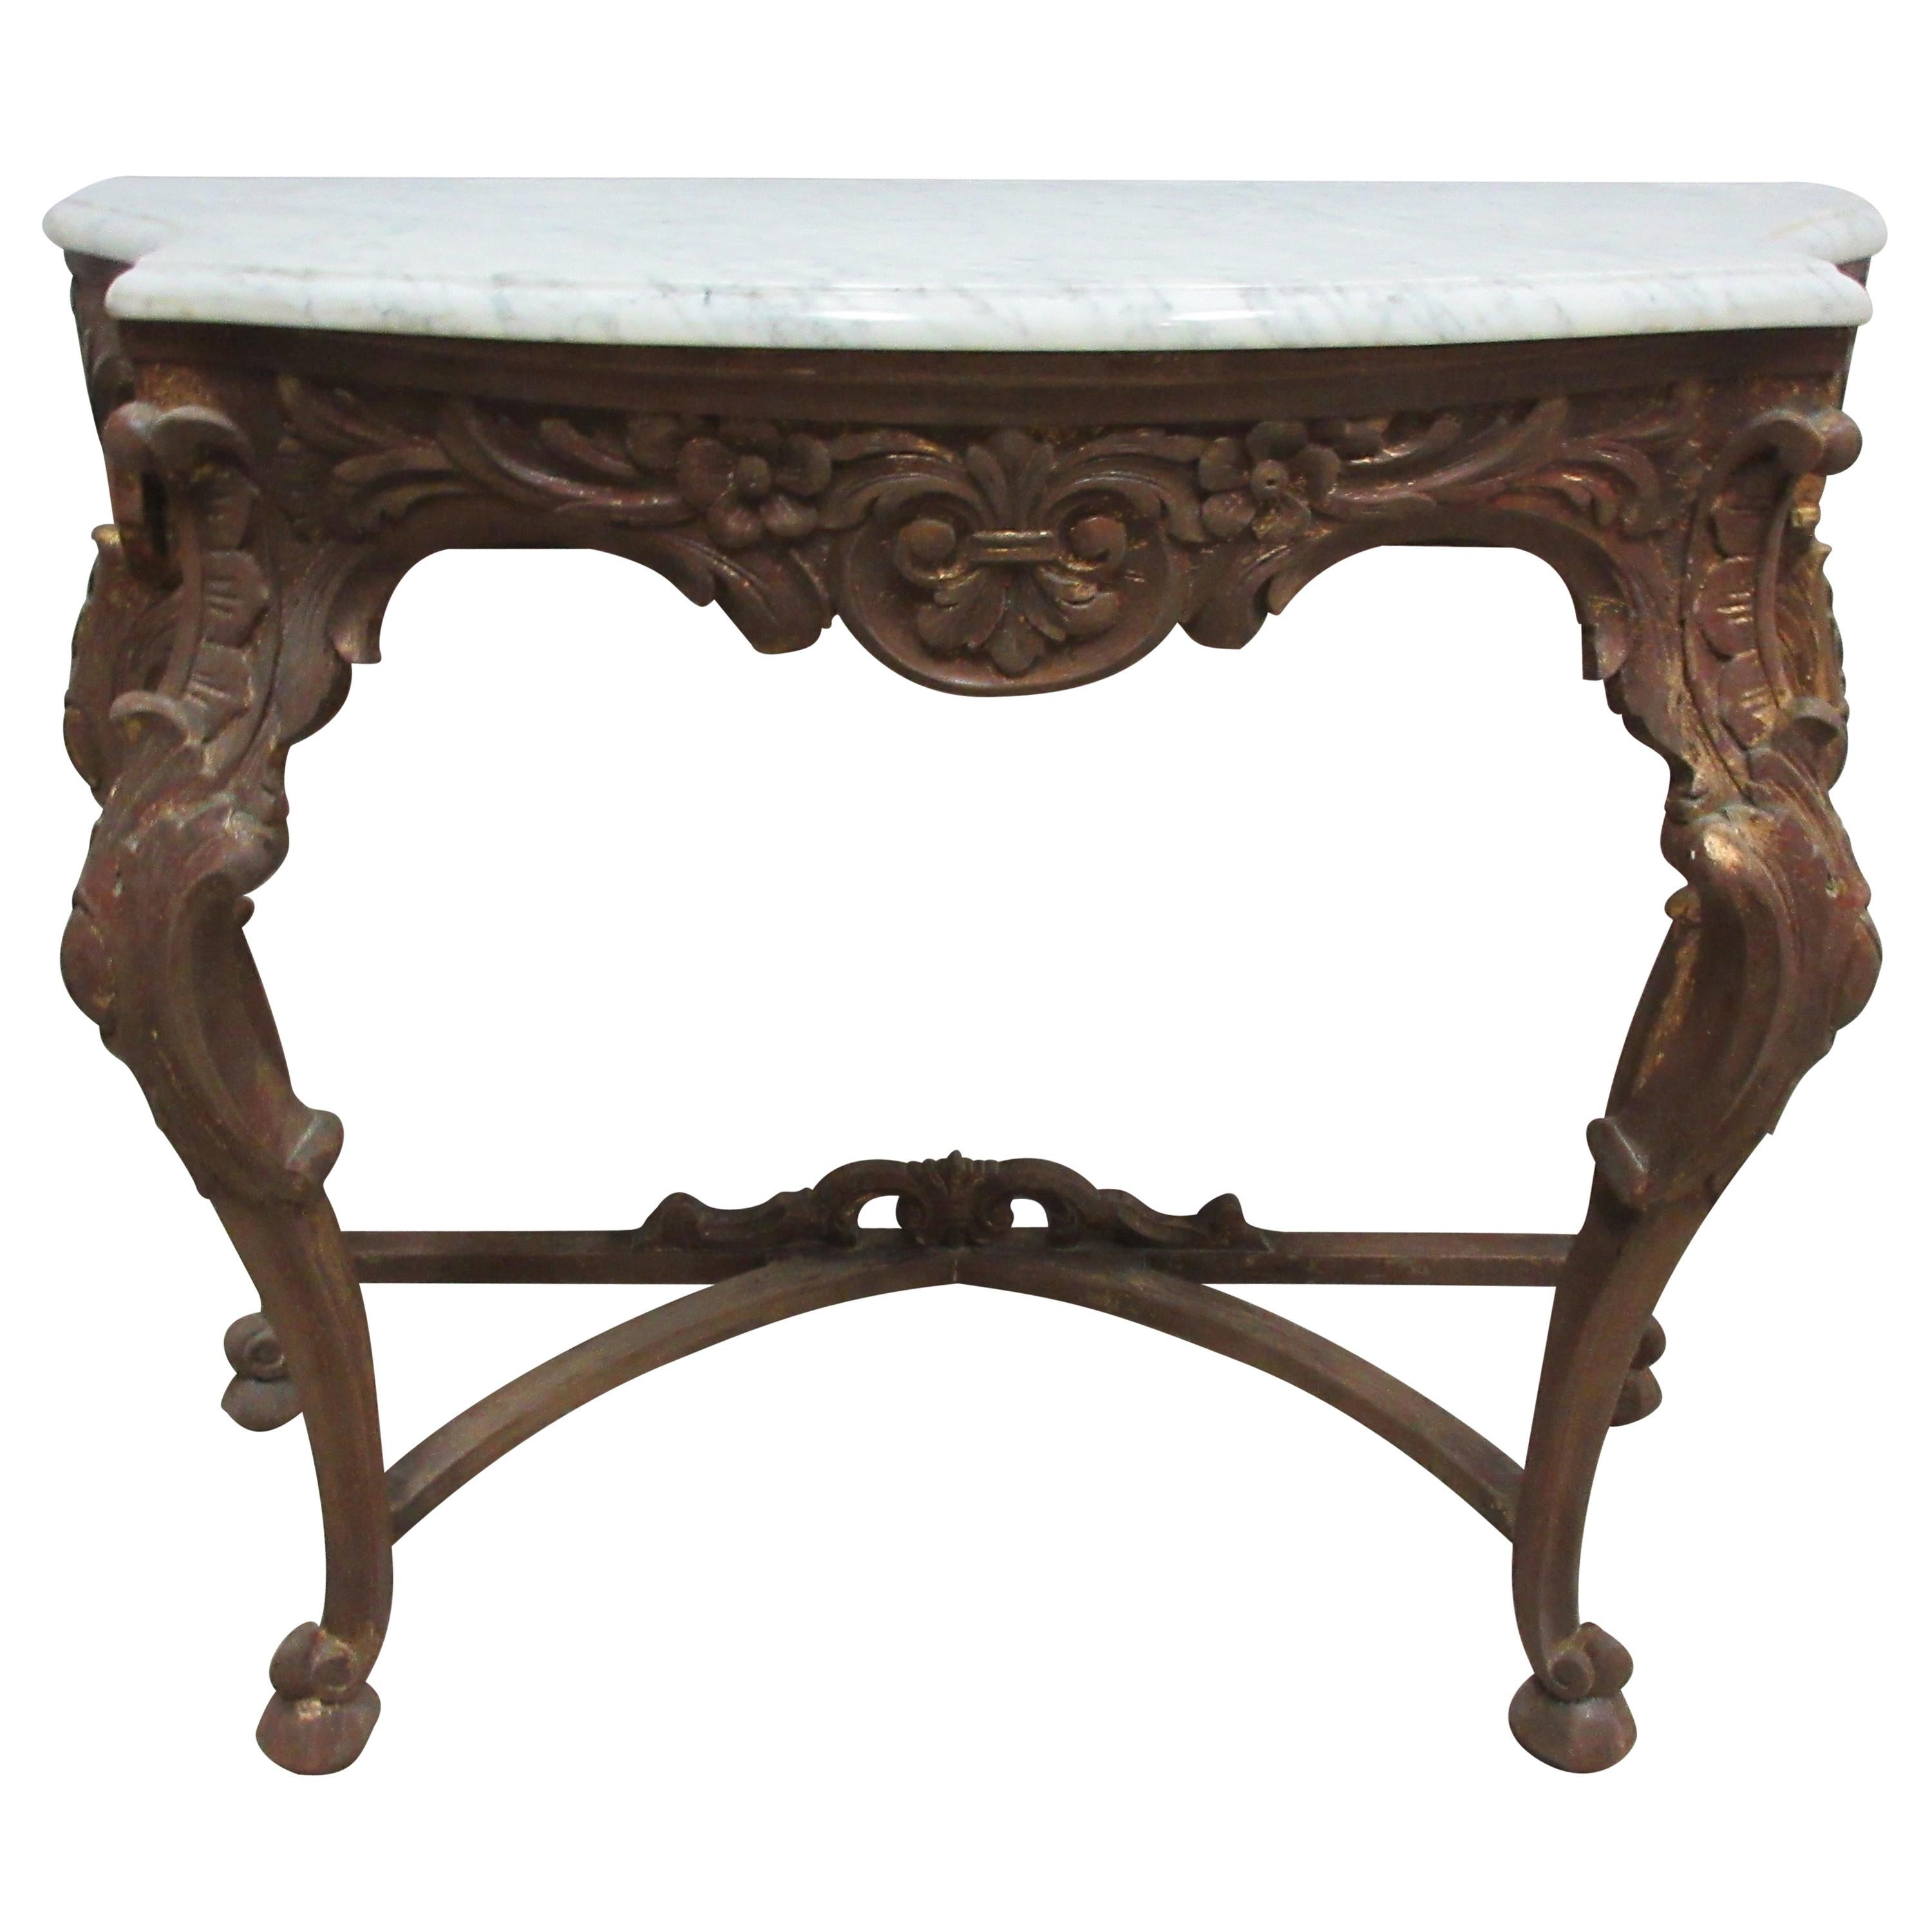 Original Swedish Rococo Console Table